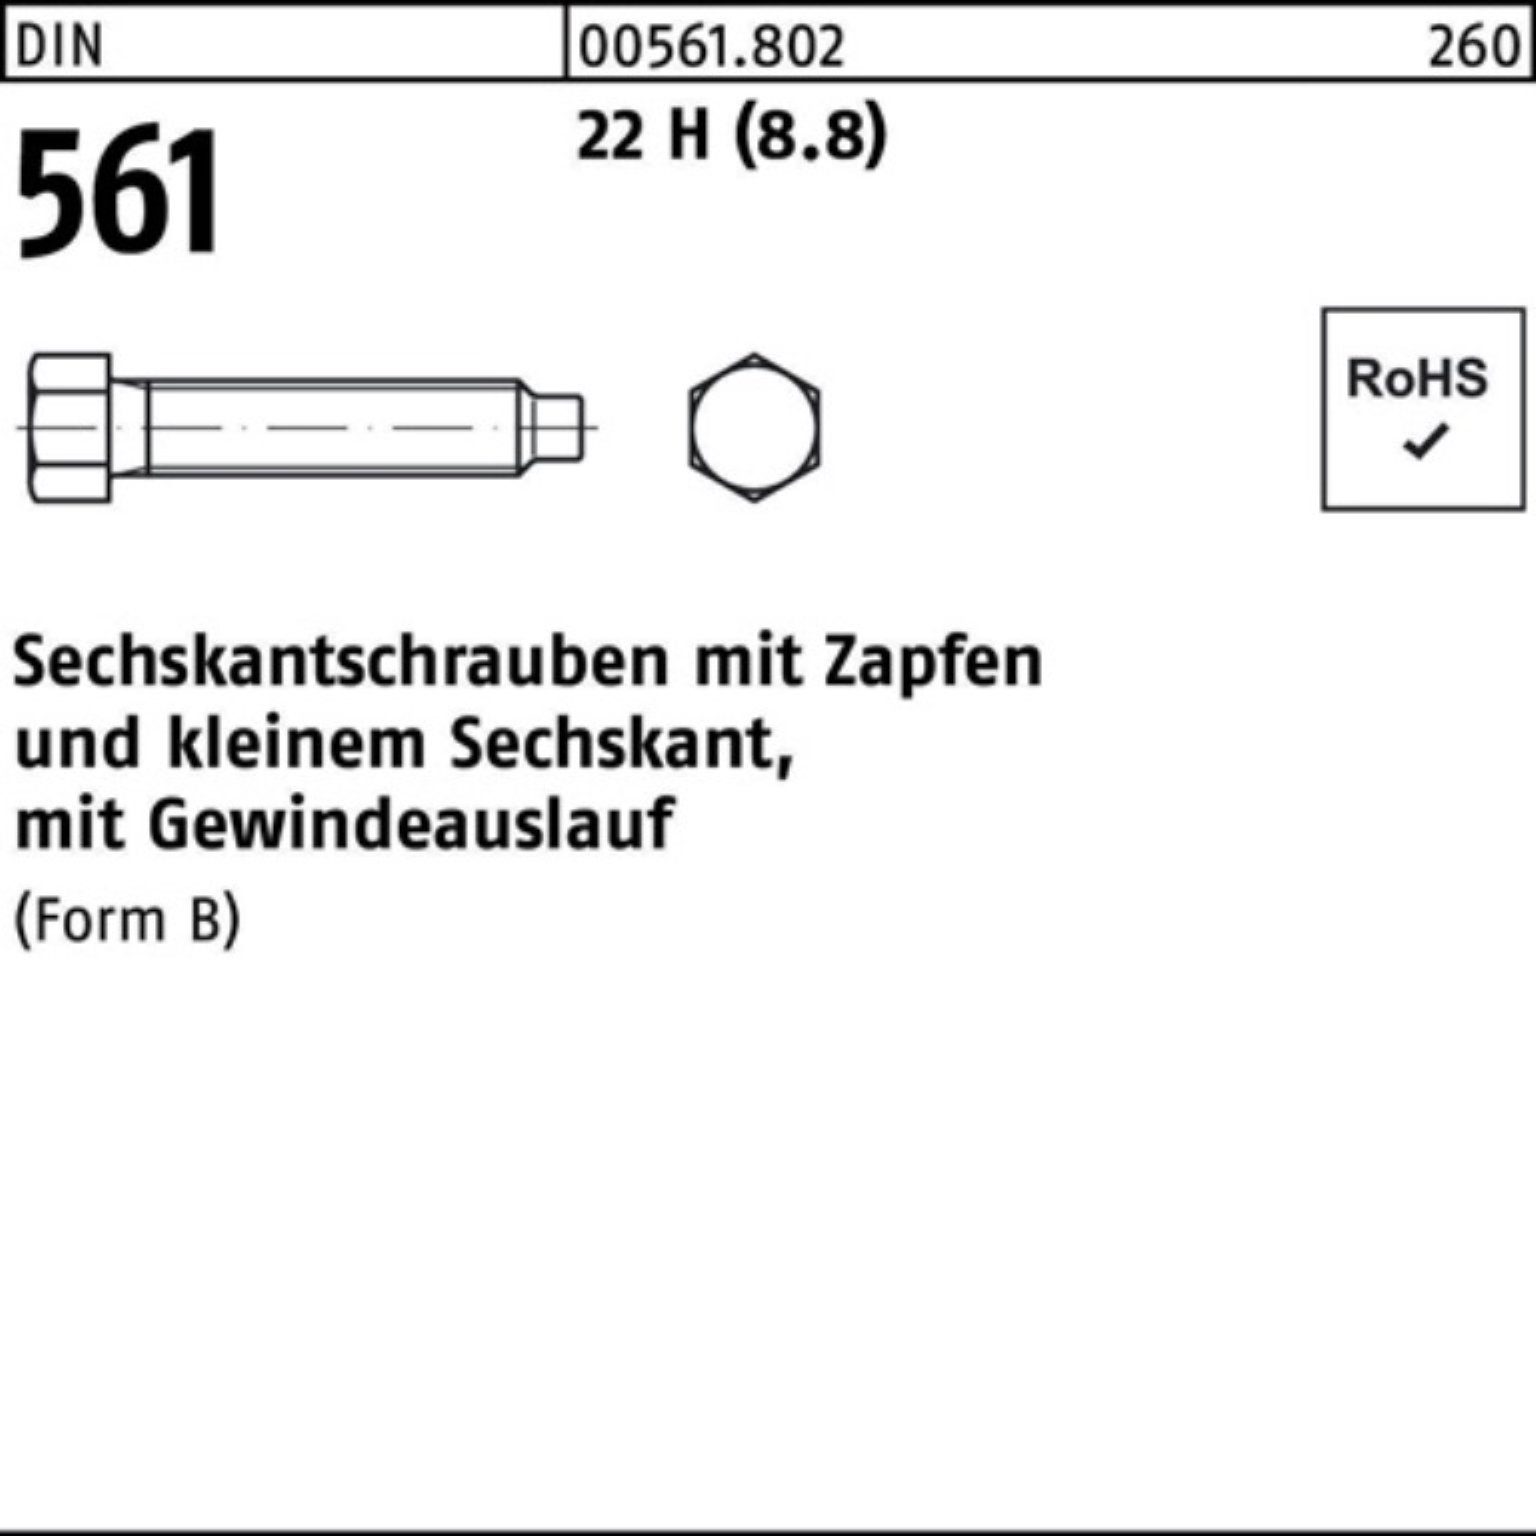 Reyher Sechskantschraube 100er DIN Zapfen S 561 100 (8.8) Sechskantschraube H 25 22 10x Pack BM